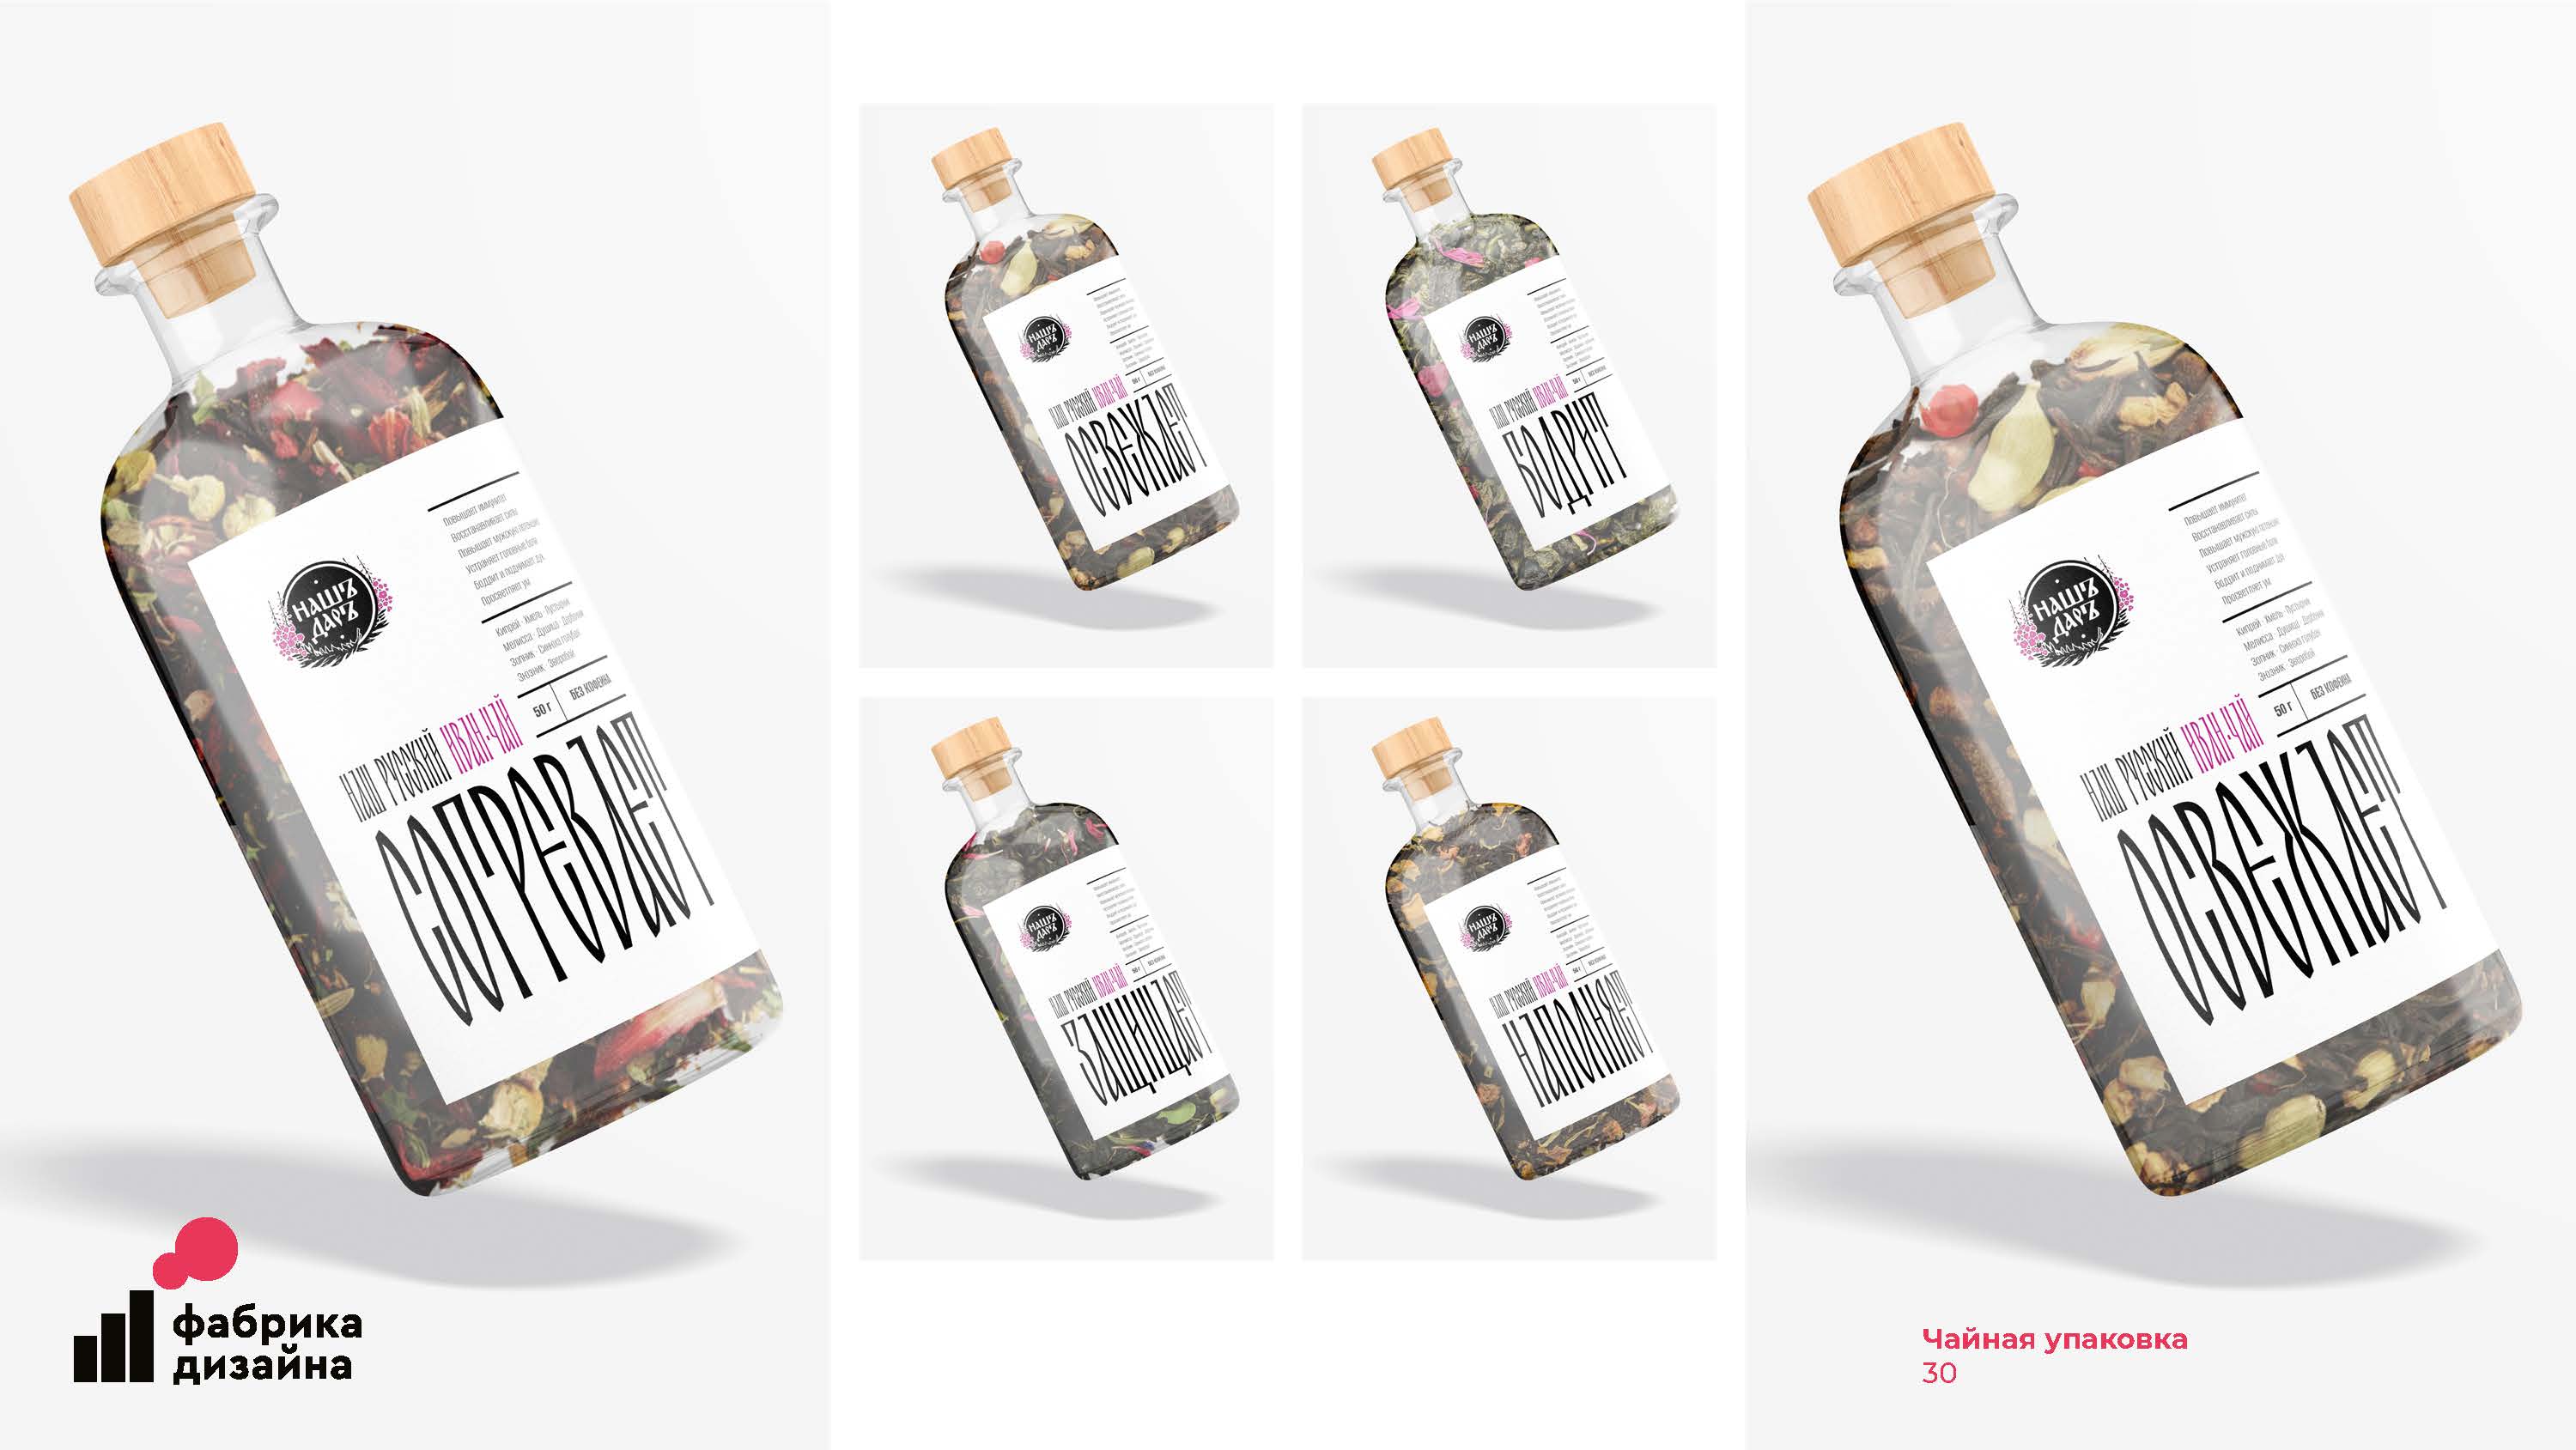 Победитель конкурса «Фабрика дизайна»: чайная упаковка Блог Заметки